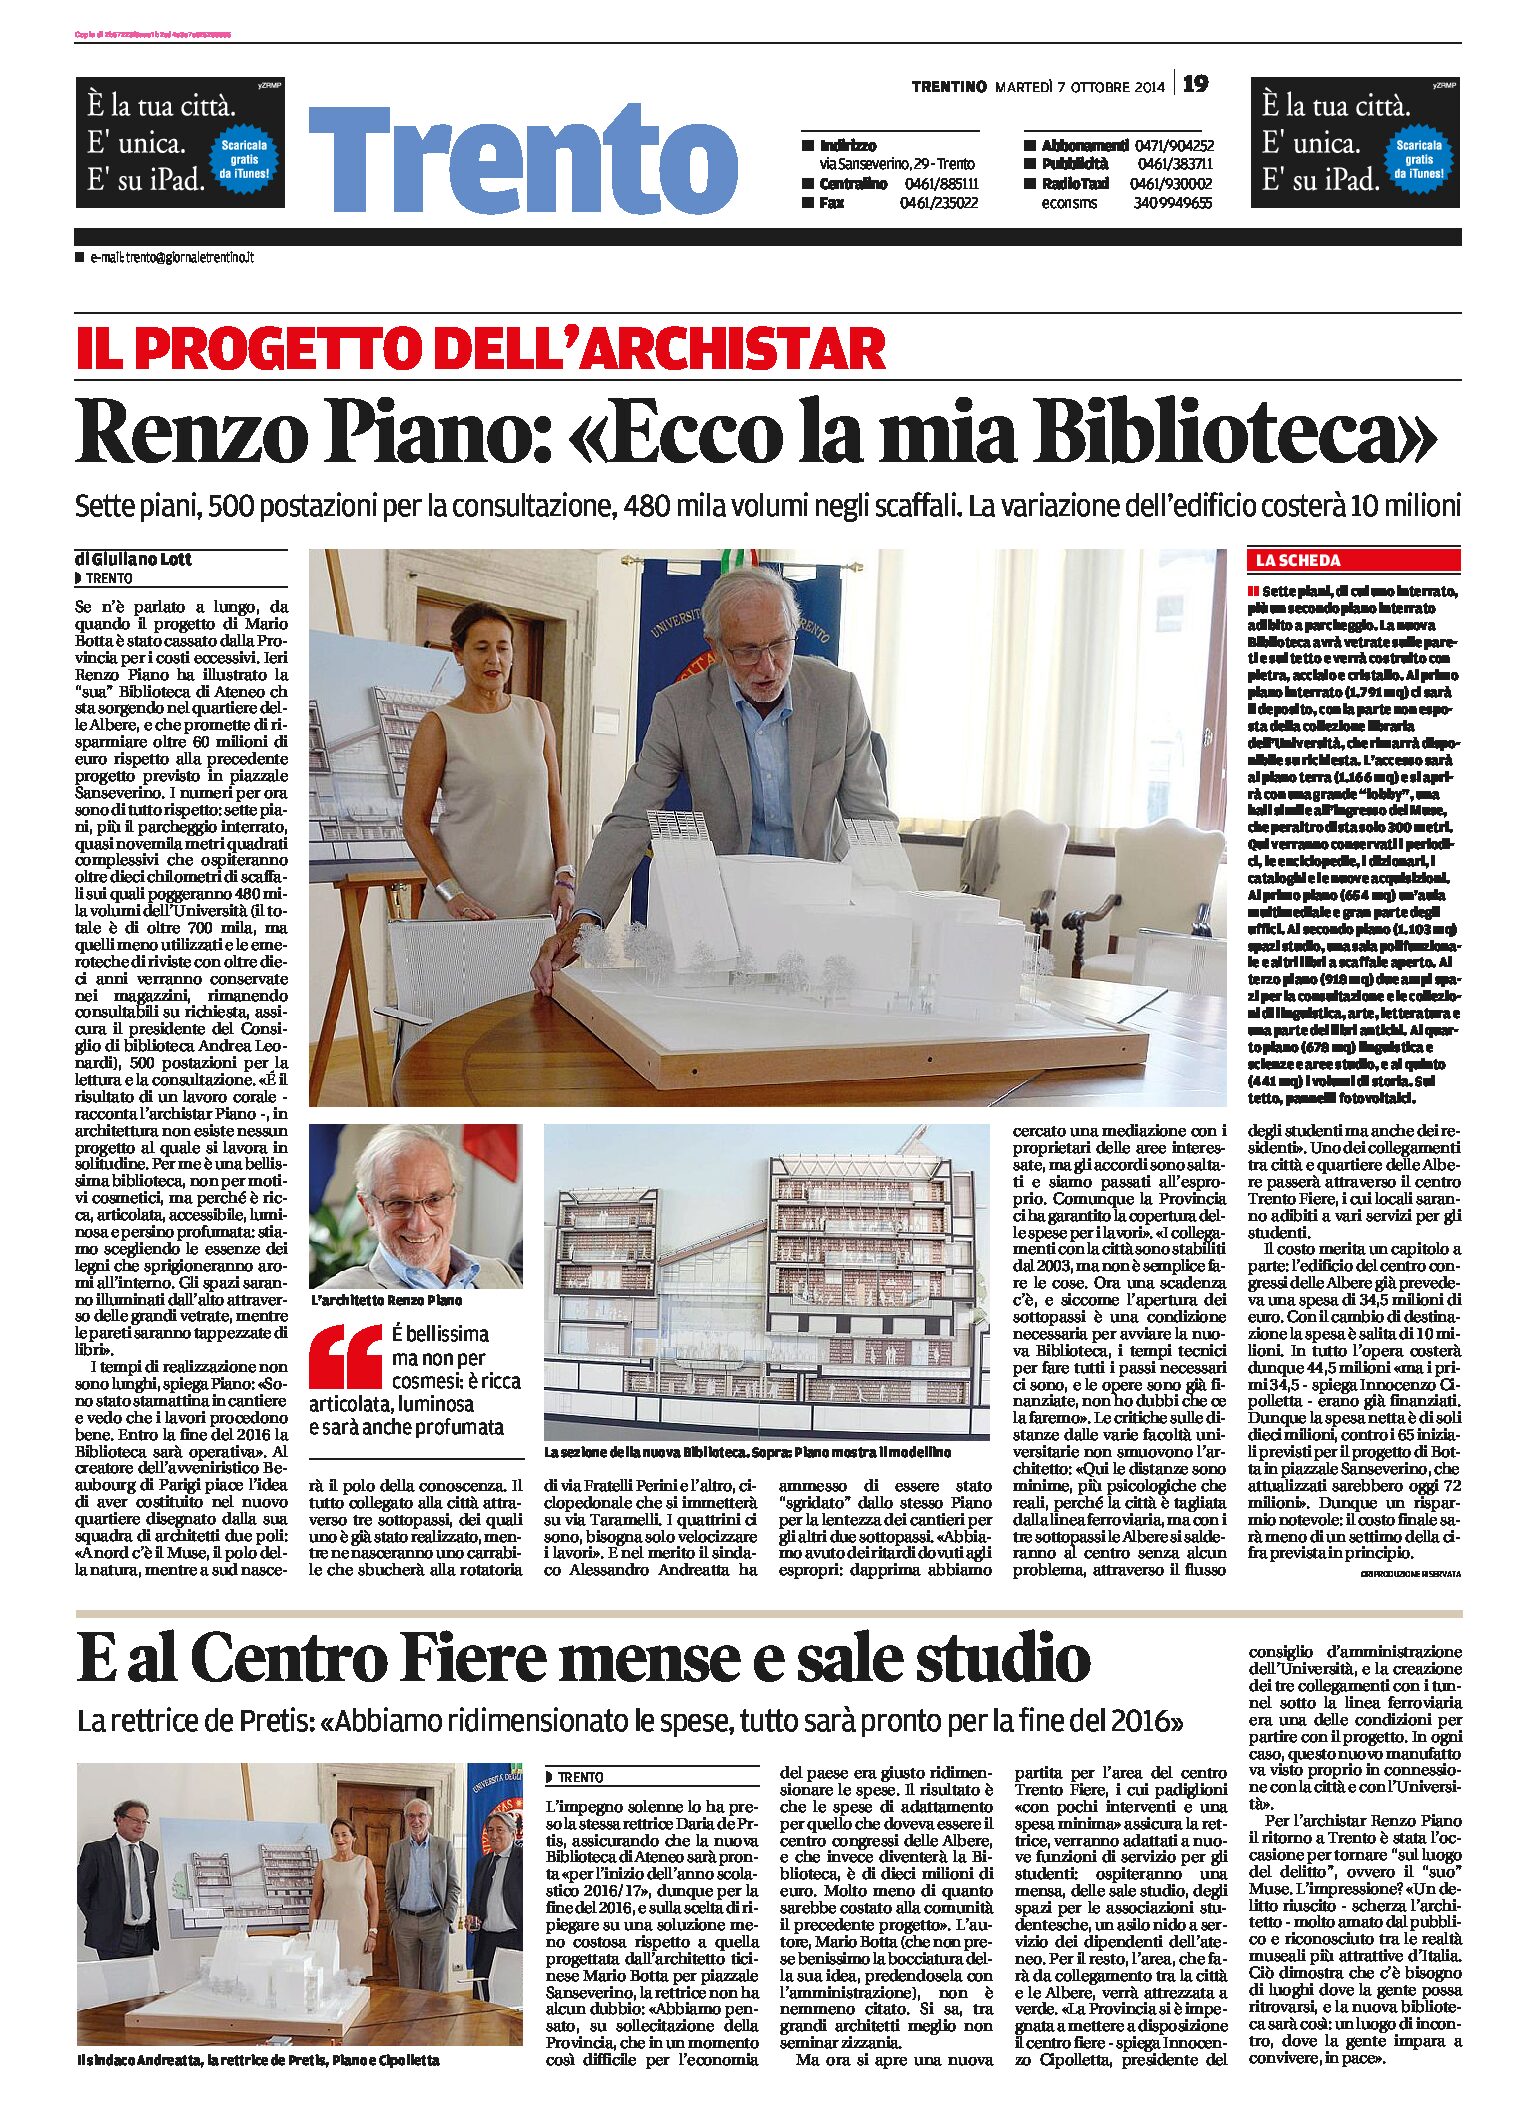 Trento, Albere: Renzo Piano “ecco la mia Biblioteca”.